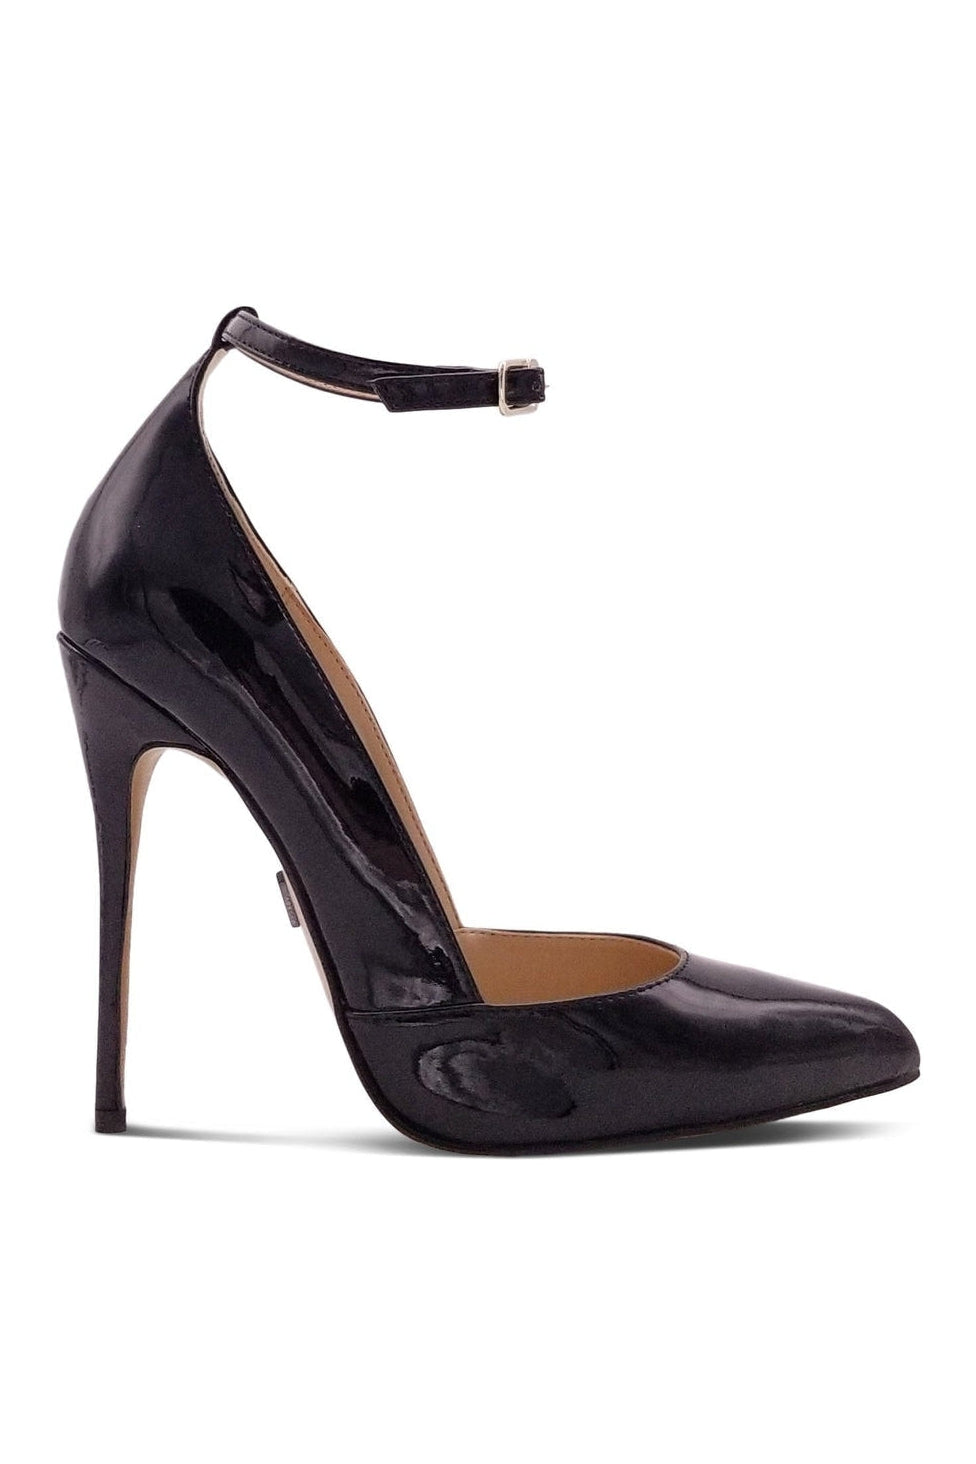 Sexy A-Line Ankle Strap Stiletto Pump-Pumps-Sexyshoes Signature-Black-SEXYSHOES.COM